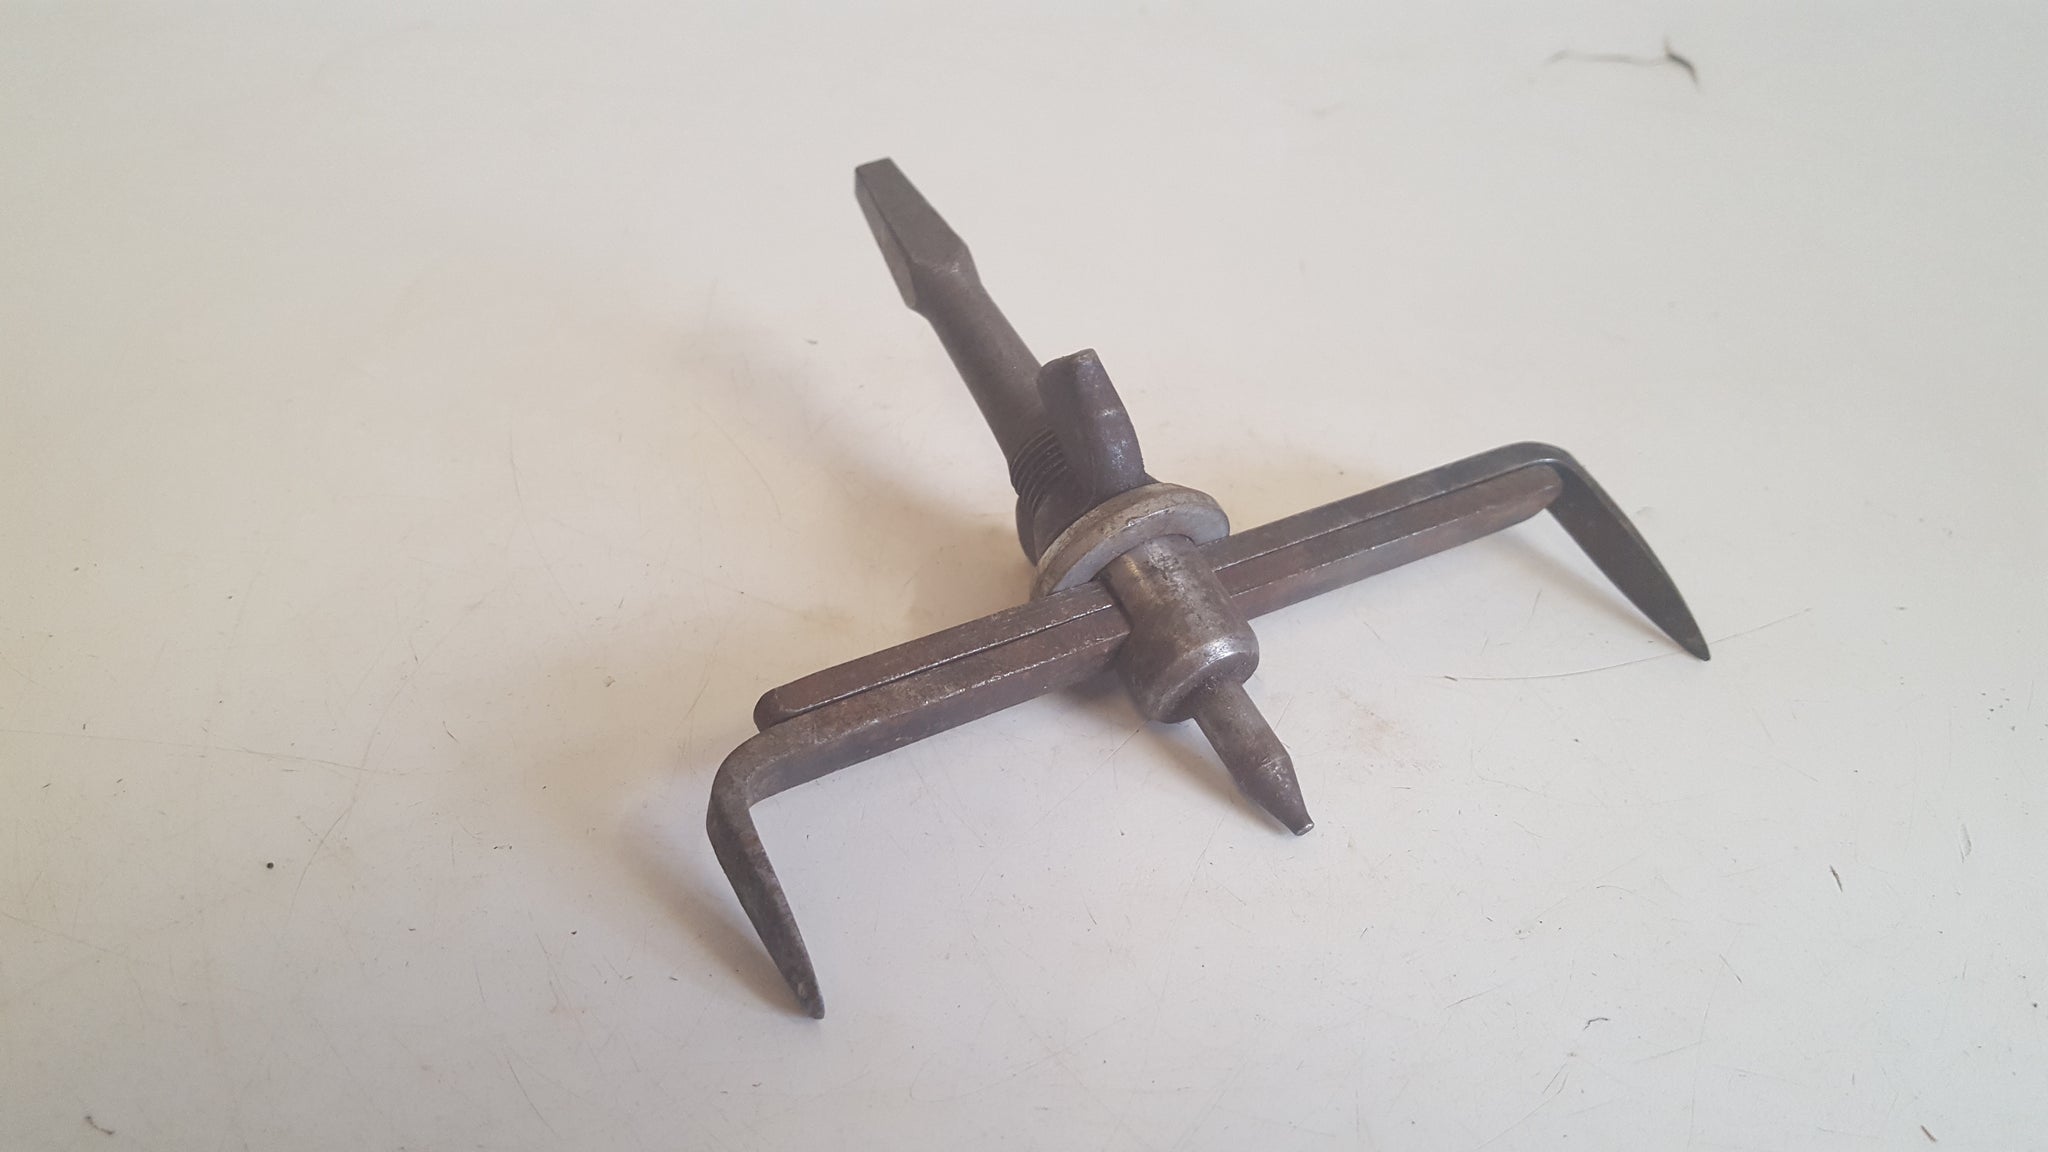 Vintage Adjustable Brace Tile Cutting Tool 42359